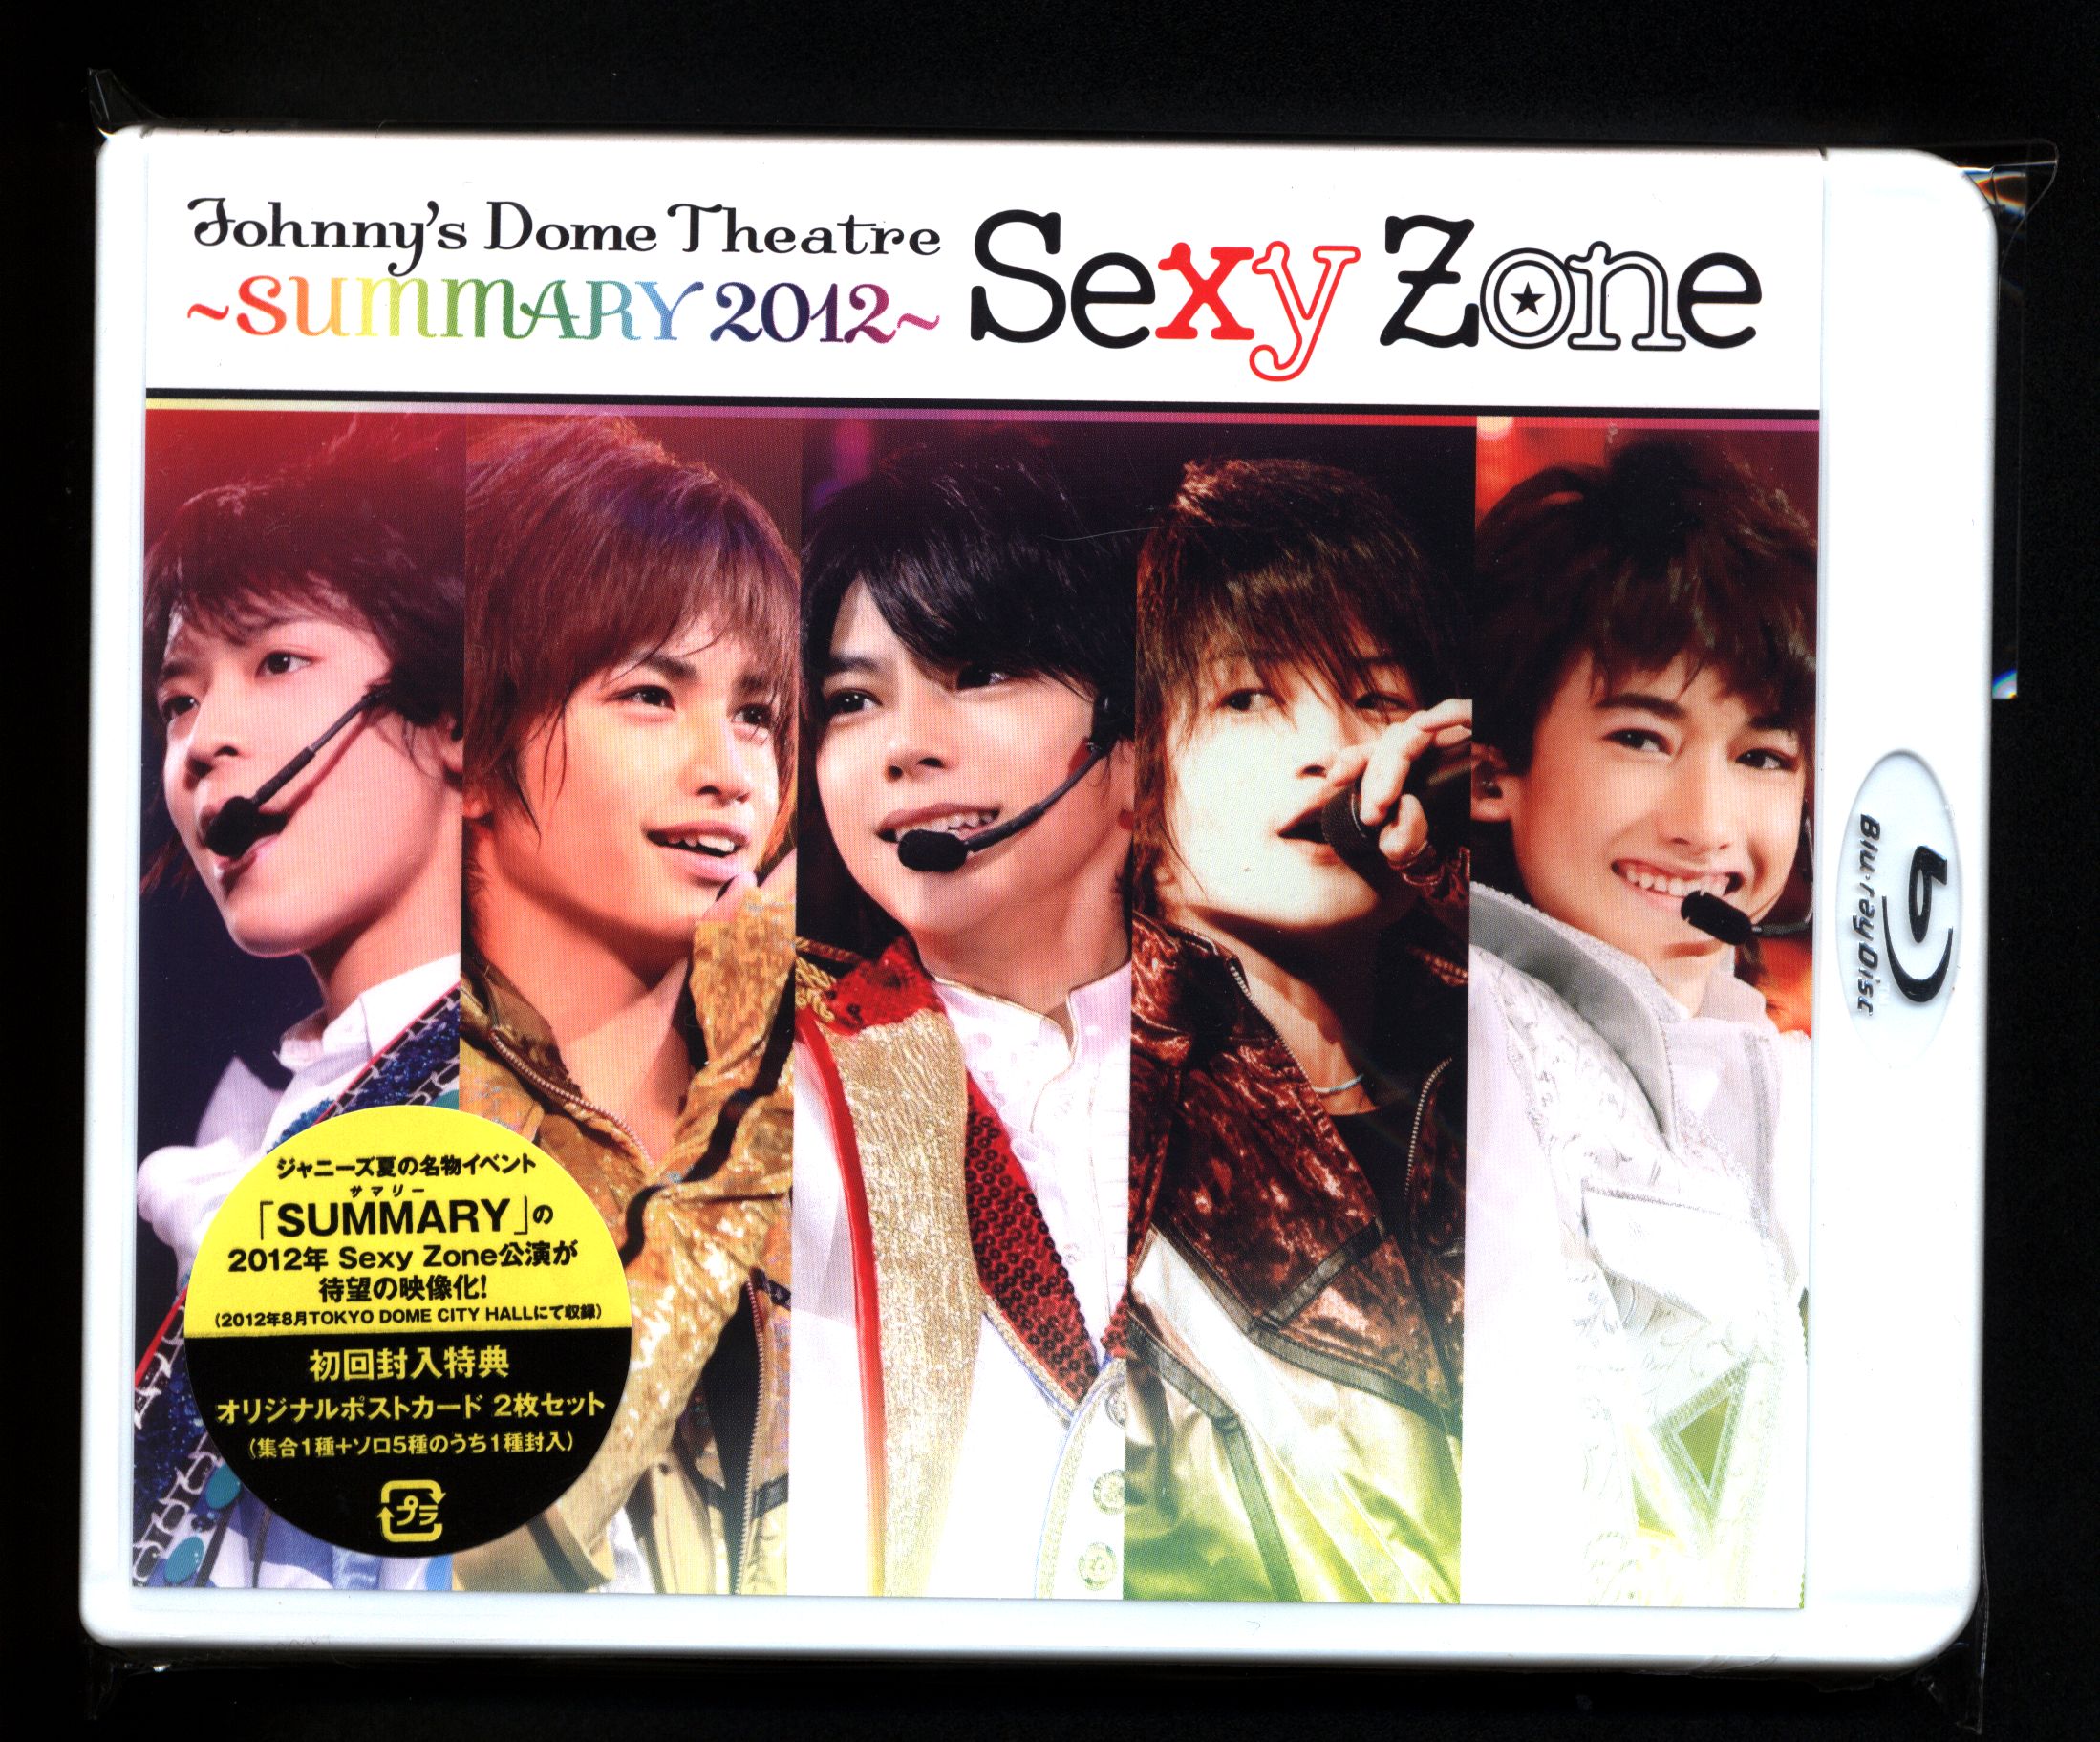 新発売 【専用】【DVD】SexyZone Theatre Dome Johnny's ミュージック 